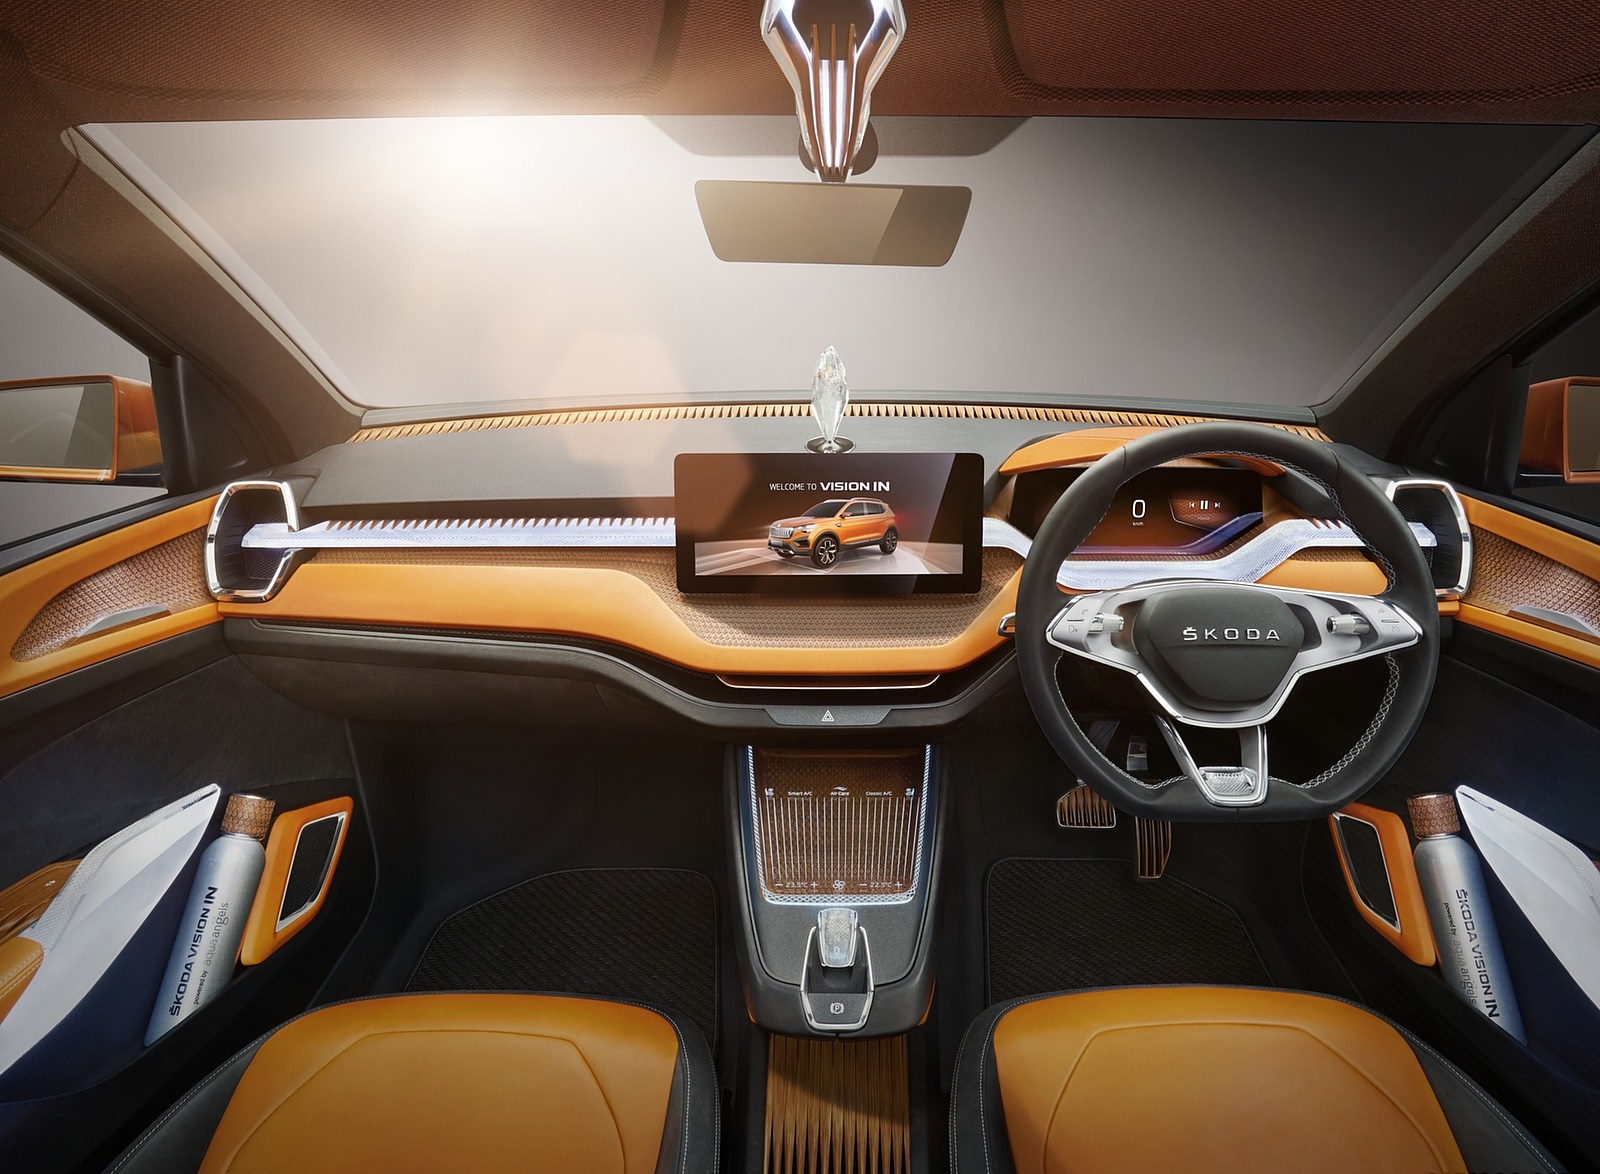 2020 Škoda Vision IN Interior Cockpit Wallpapers #13 of 21